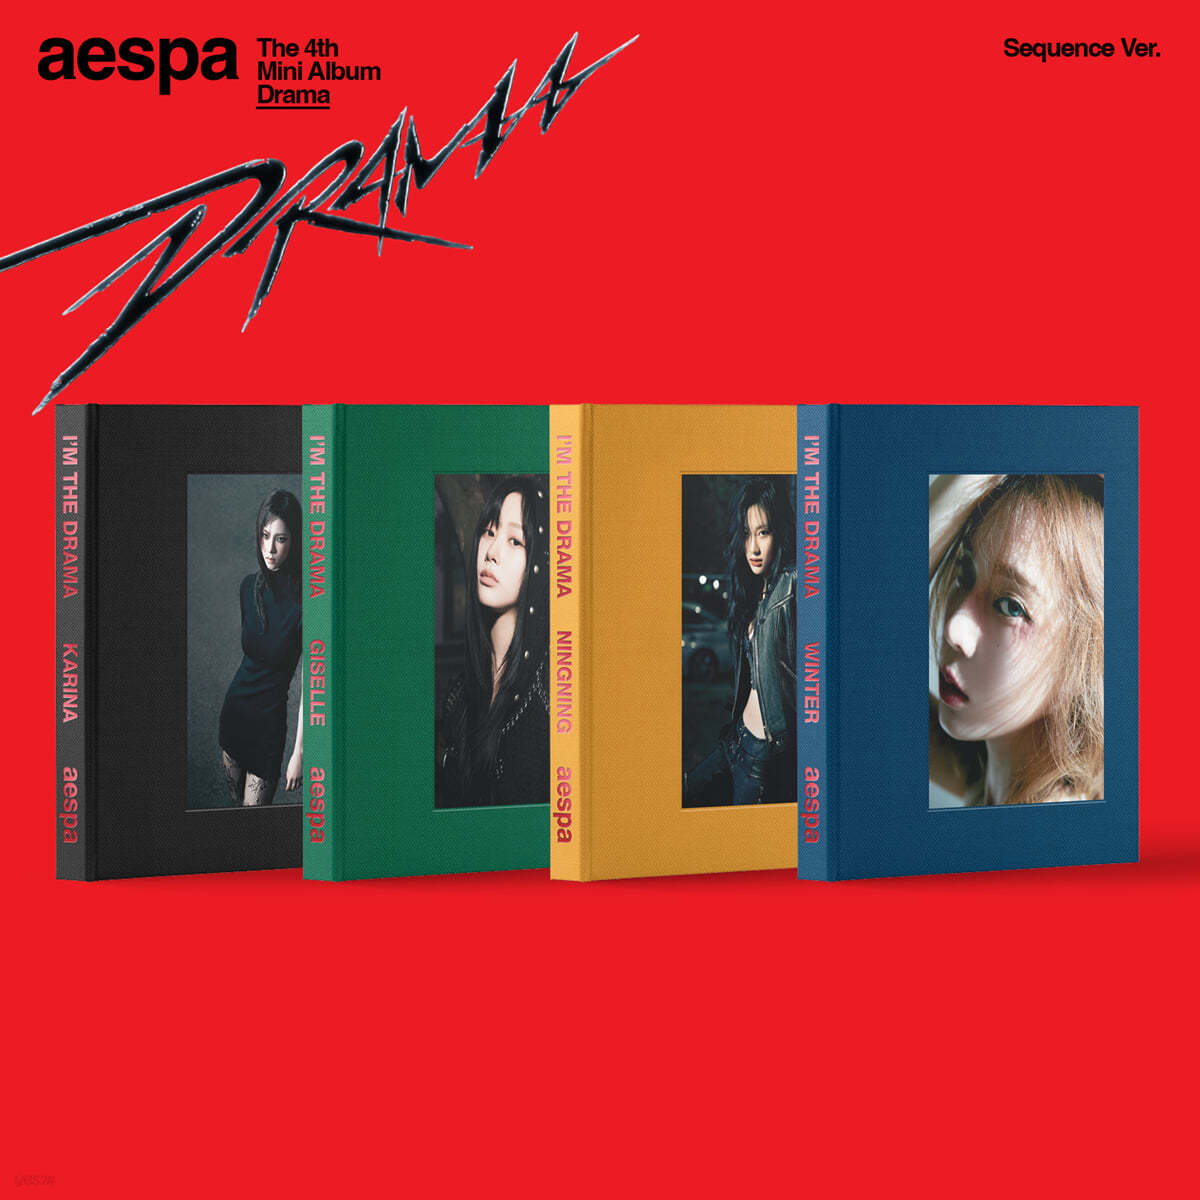 에스파 (aespa) - 미니앨범 4집 : Drama [Sequence ver.][4종 SET]